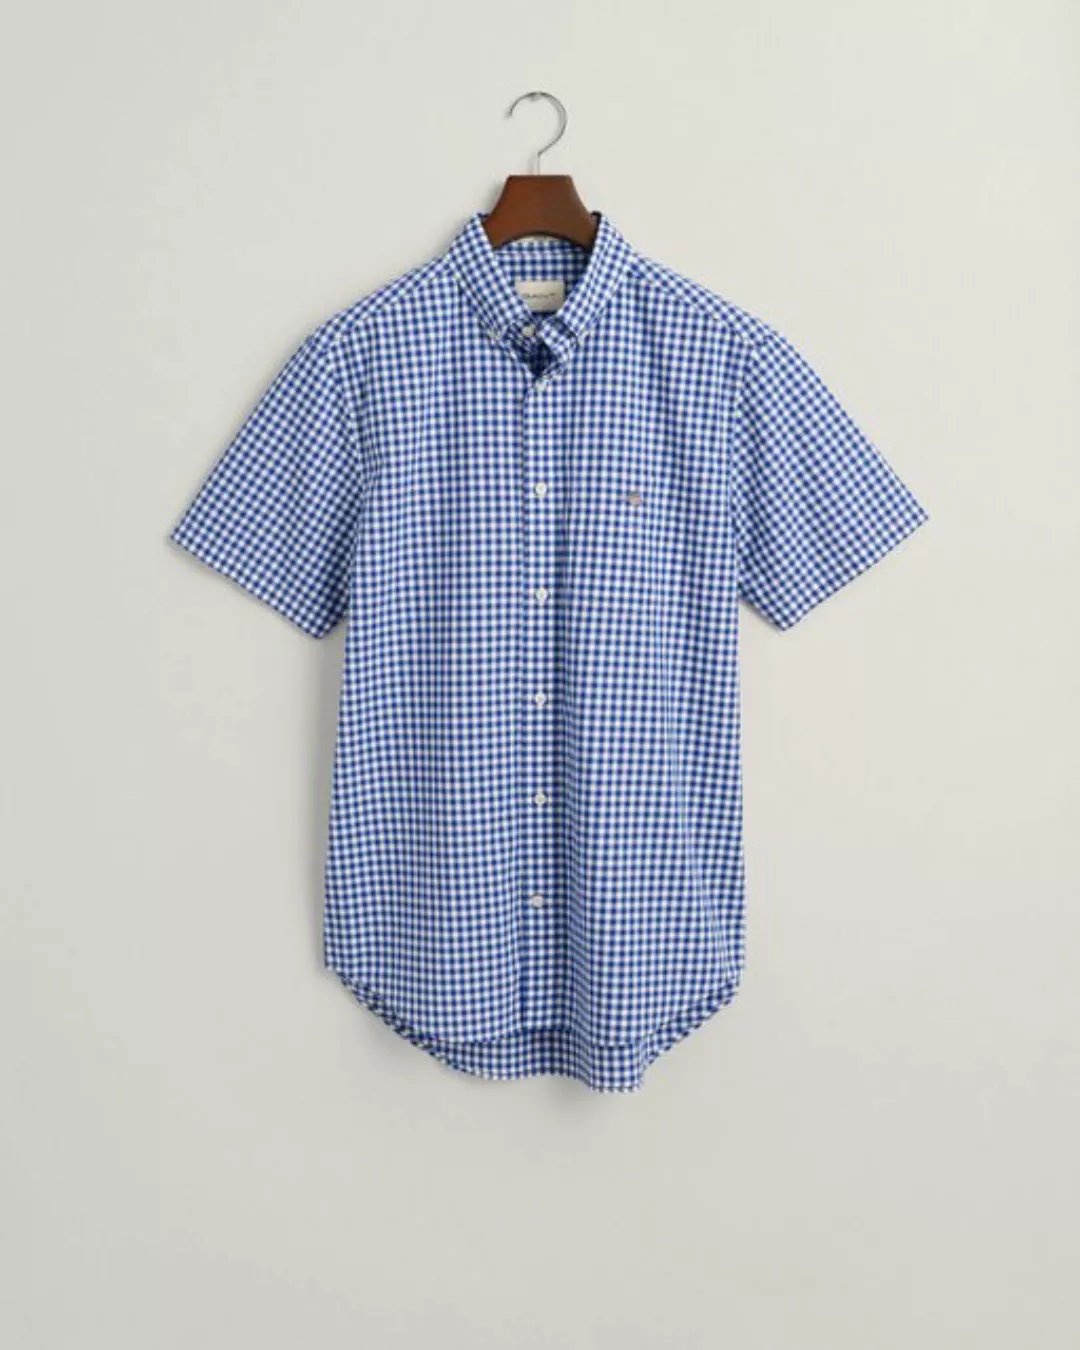 Gant Kurzarmhemd Regular Fit Gingham Popeline Hemd strapazierfähig pflegele günstig online kaufen